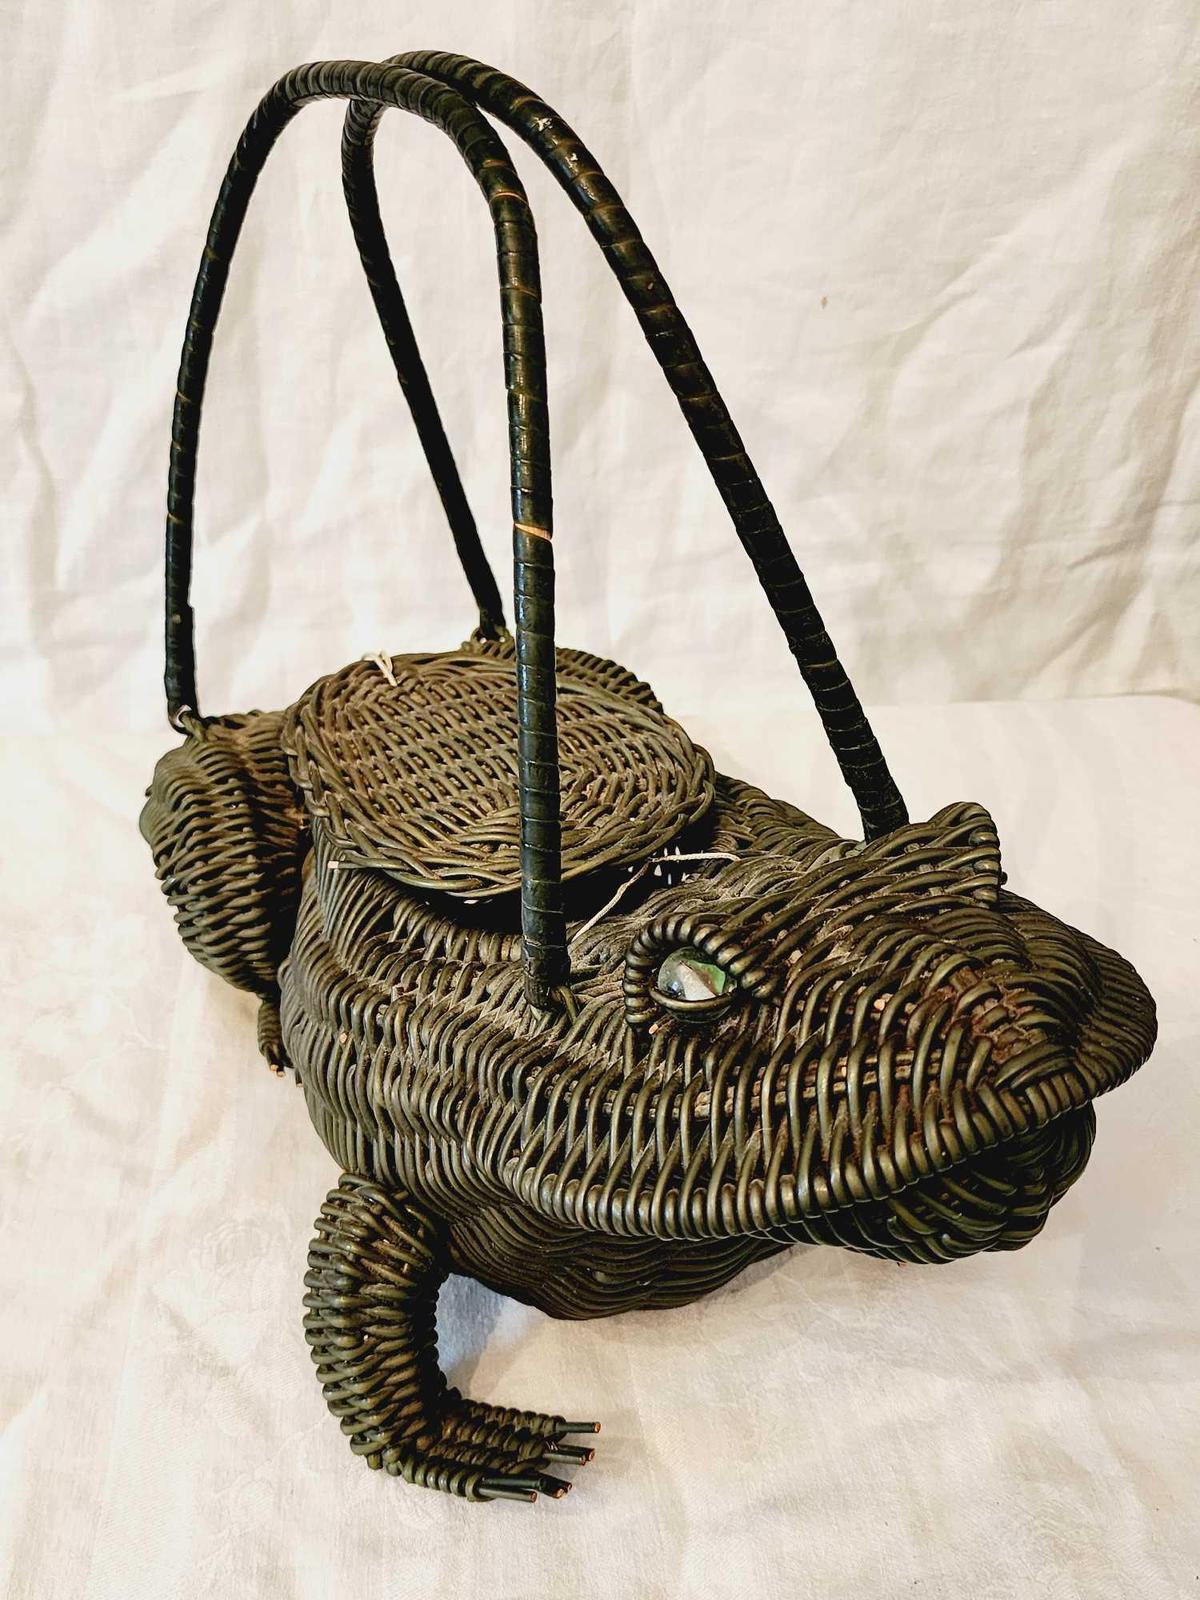 Vintage 1950s woven wicker frog purse